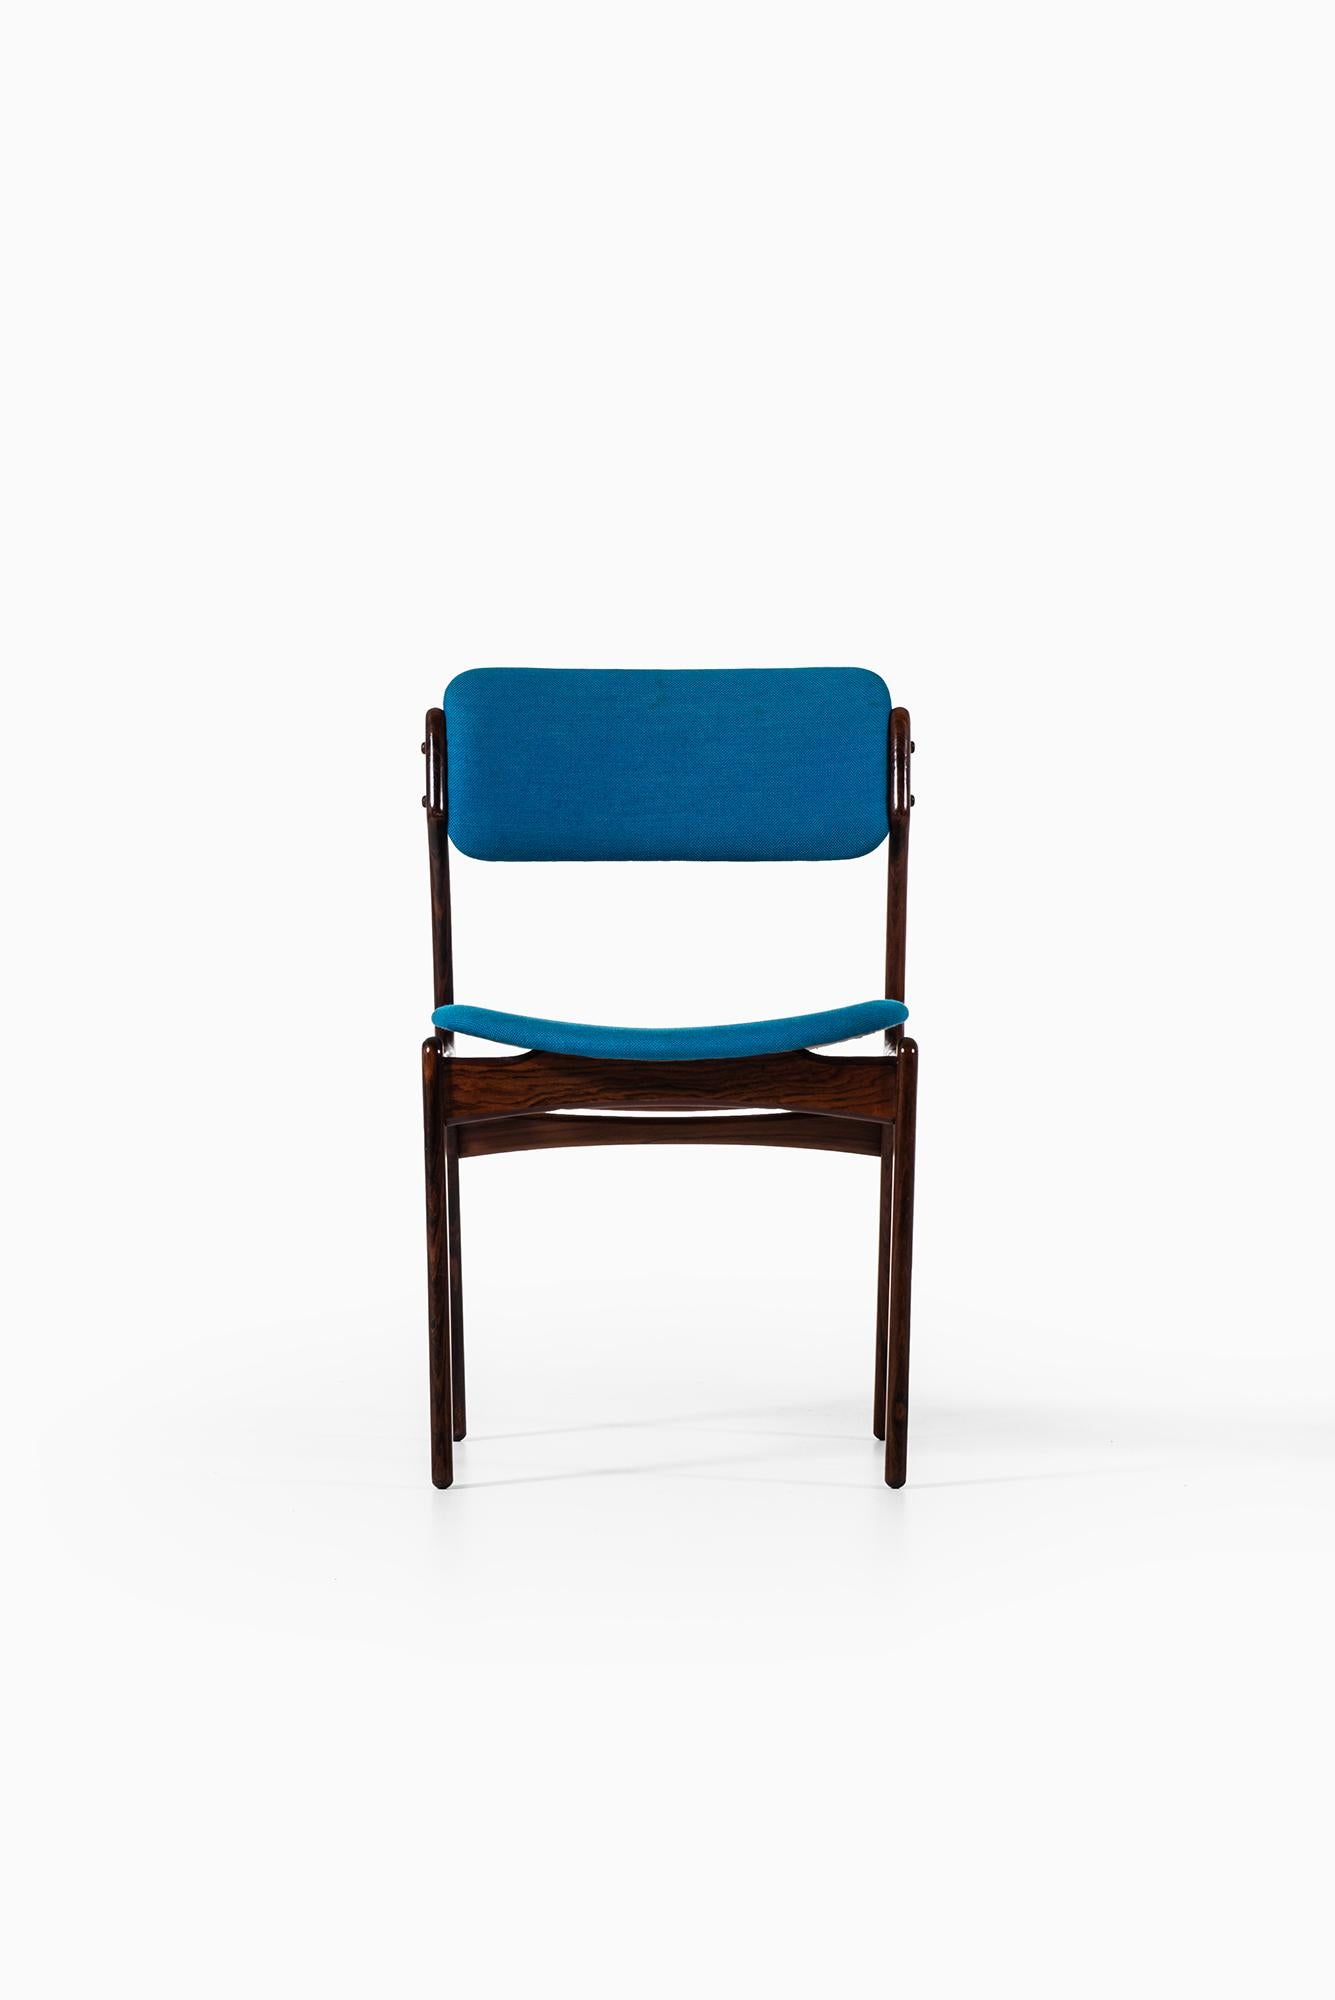 Erik Buch Dining Chairs Model OD-49 by Oddense Maskinsnedkeri in Denmark For Sale 1